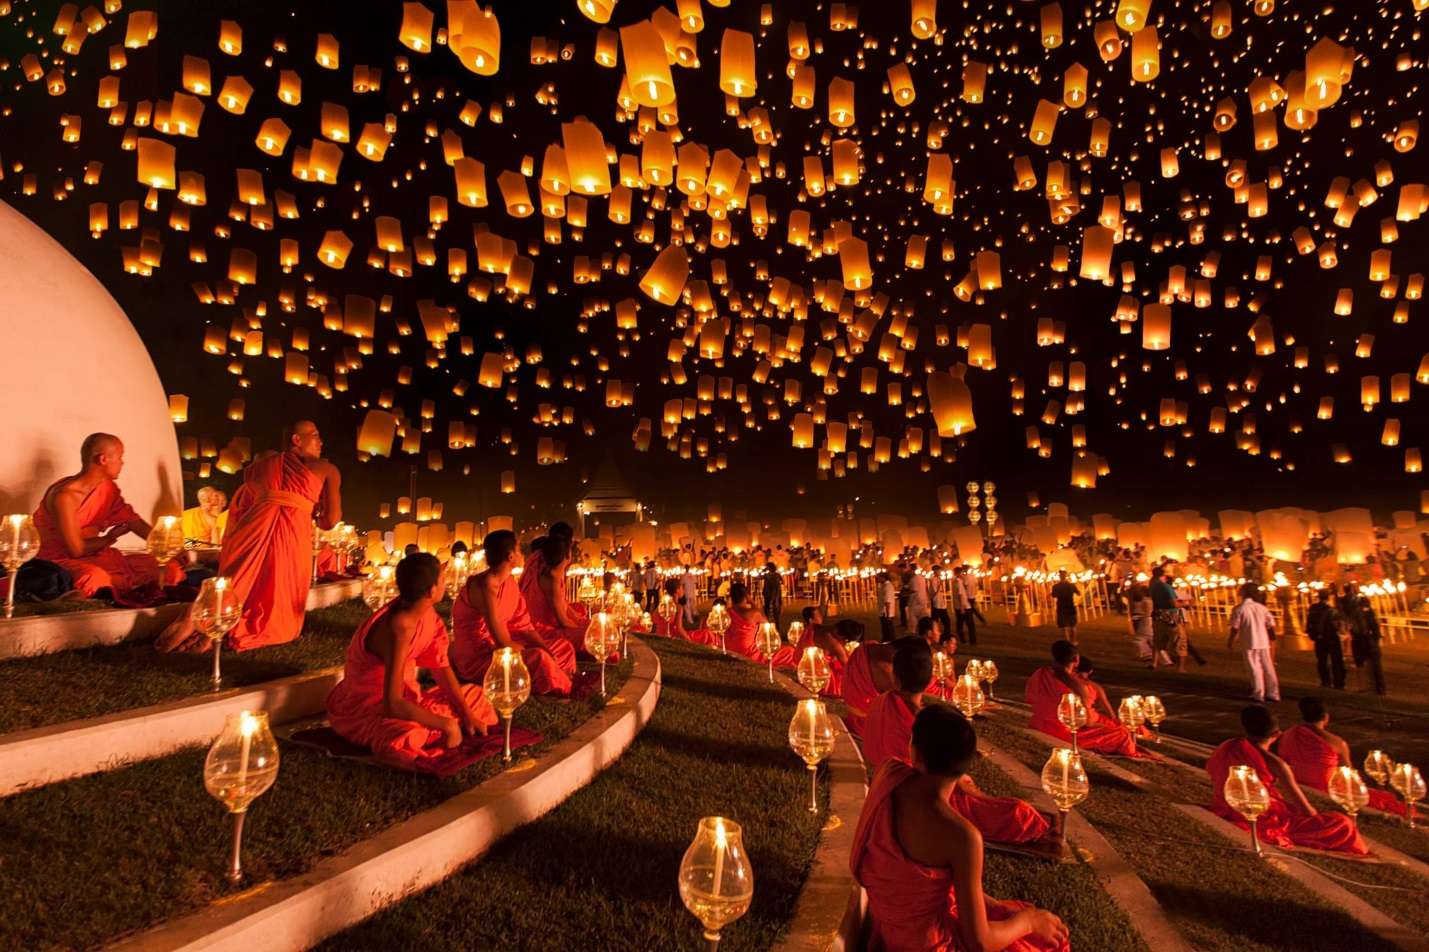 Lễ hội đèn trời ở Chiang-Mai là hoạt động thú vị được tổ chức hàng năm vào tháng 11